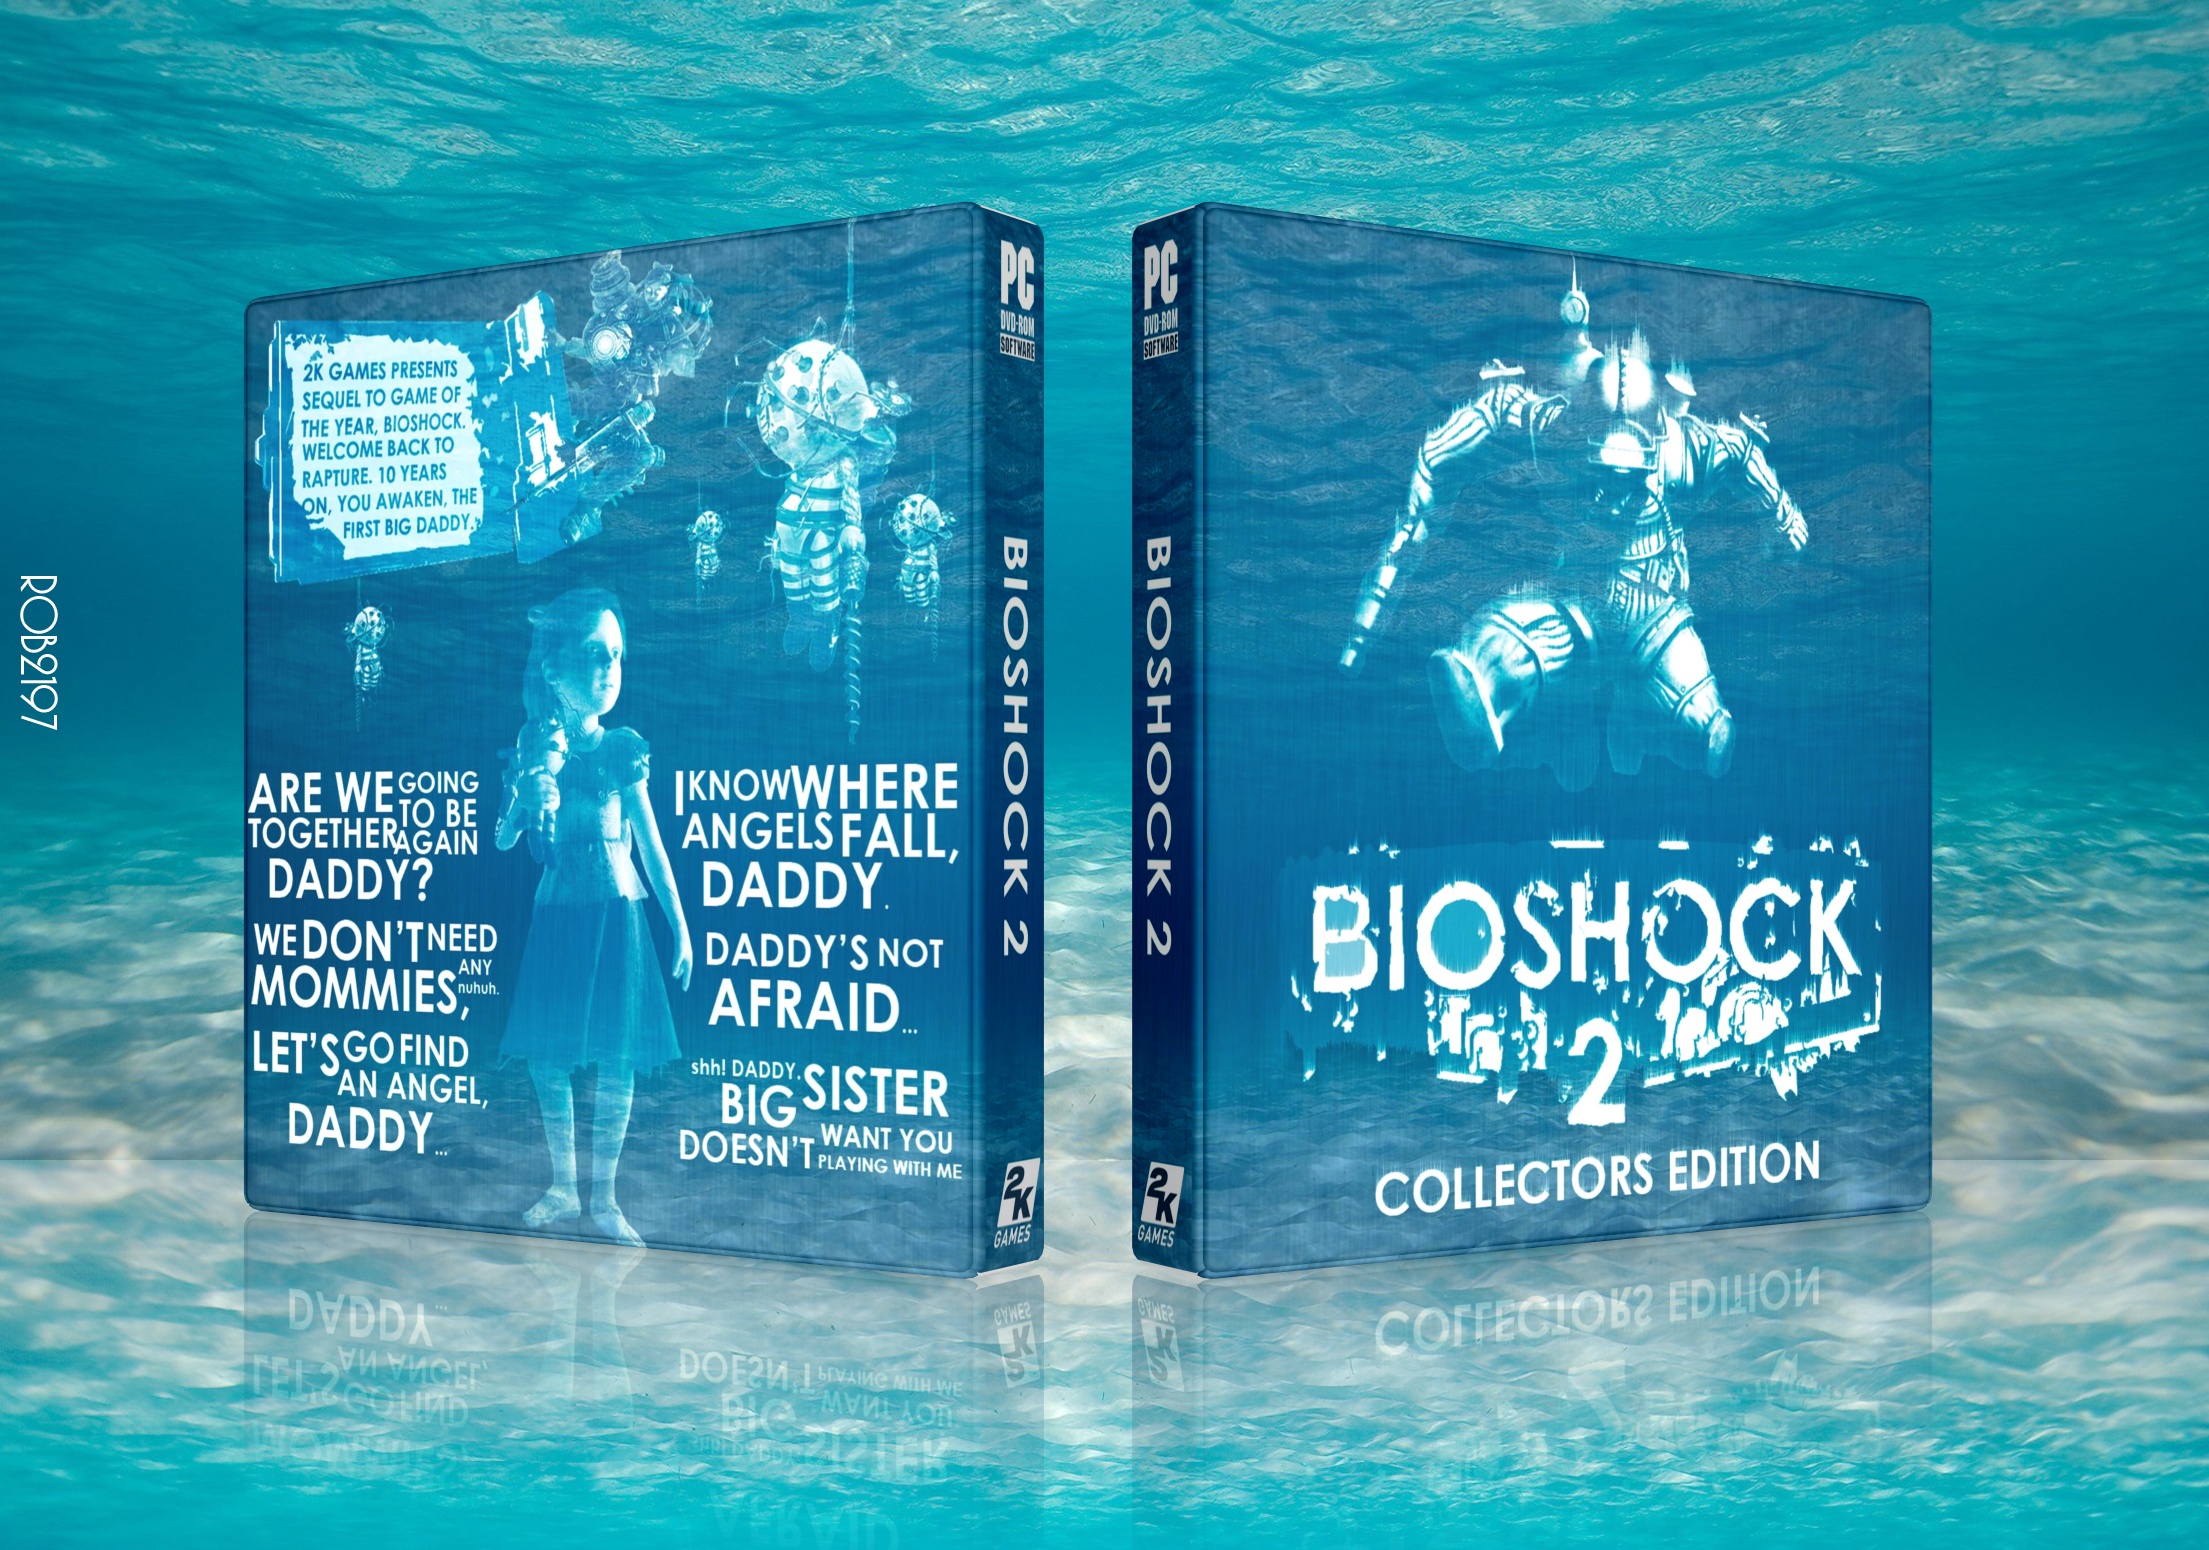 BioShock 2: Collectors Edition box cover